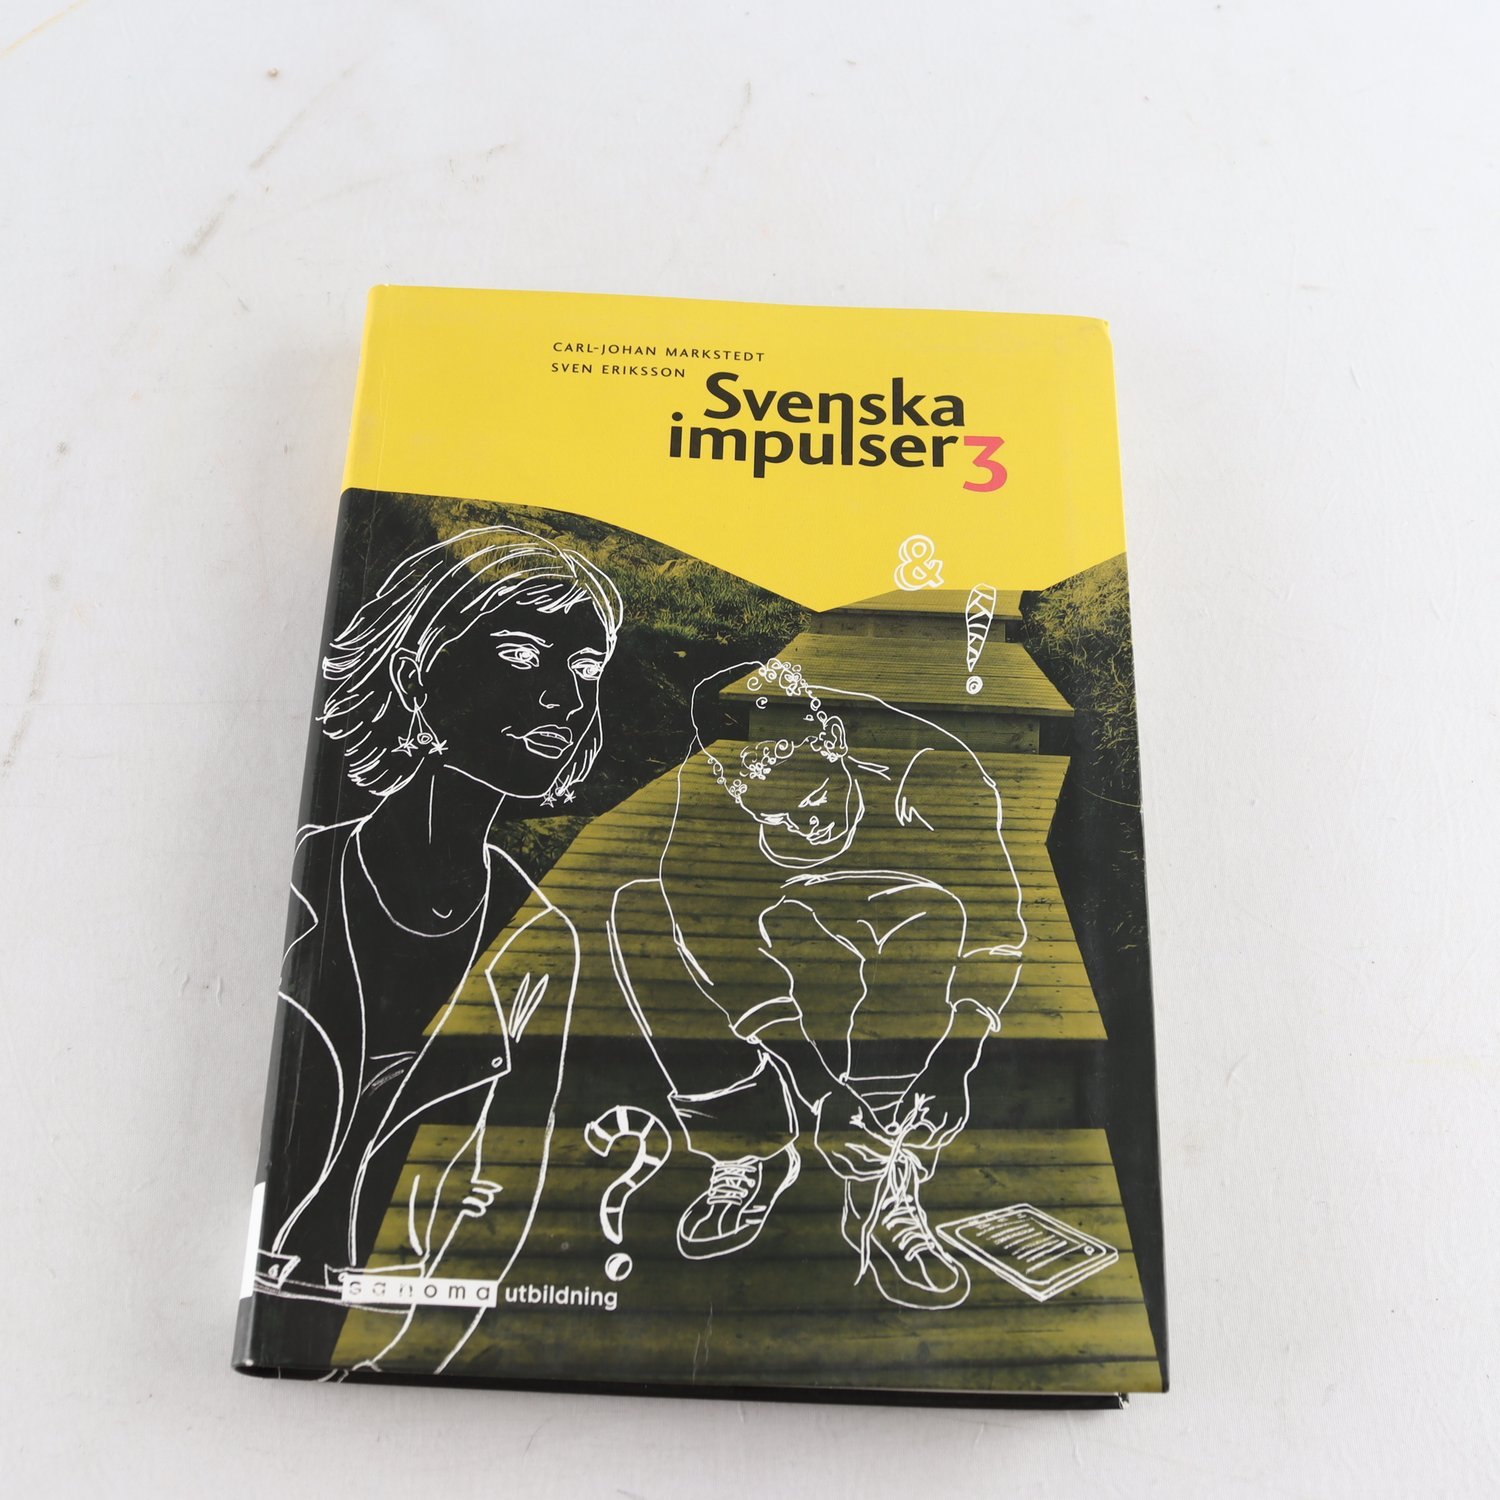 Svenska impulser 3, Carl-Johan Markstedt & Sven Eriksson